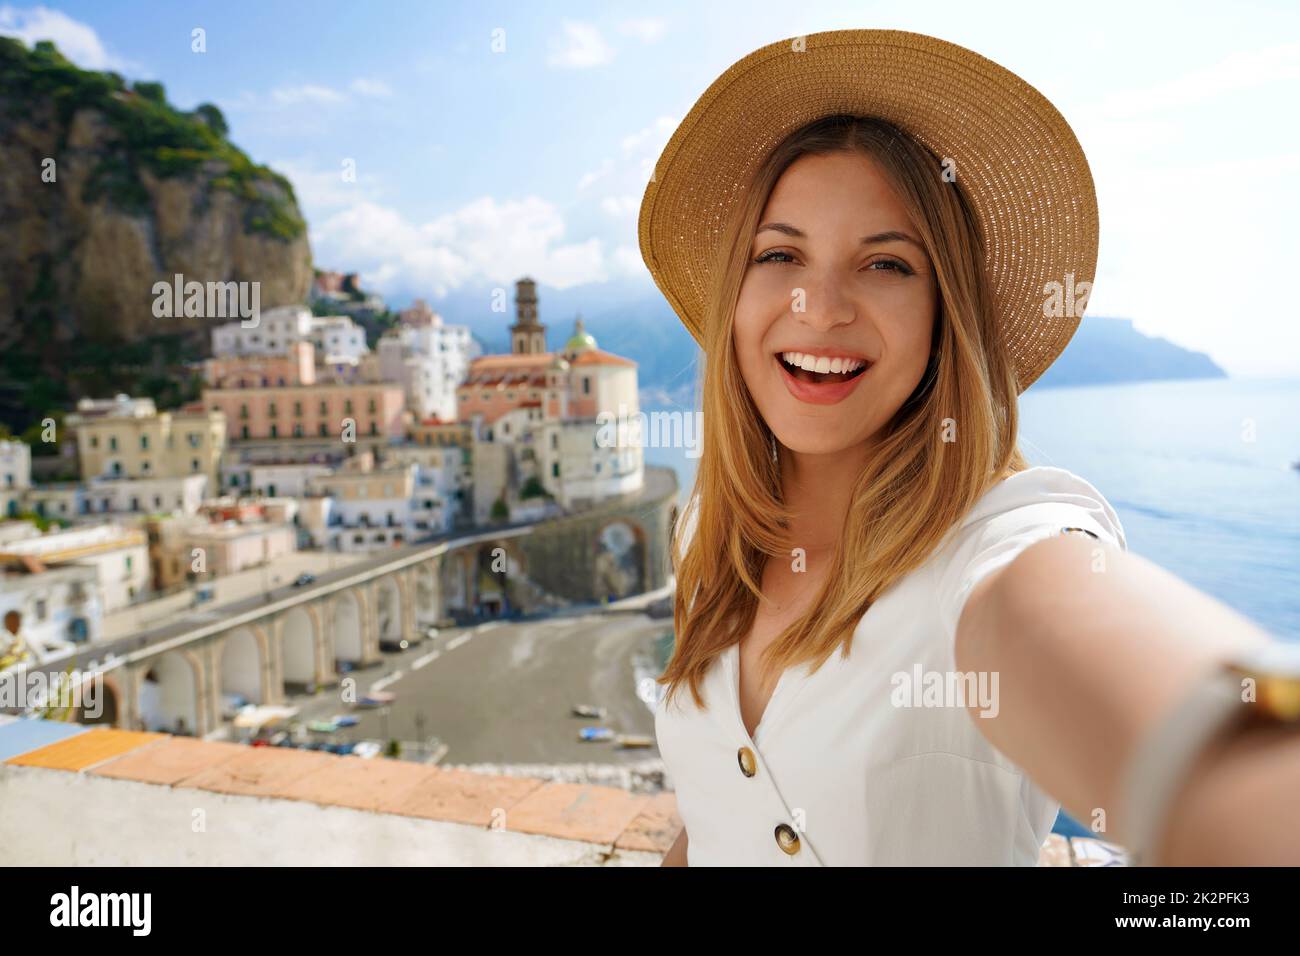 Reisen in Europa. Selfie-Frau an der Amalfiküste, Italien. Fröhliches touristisches Mädchen, das während der Sommerferien in Italien, einem berühmten europäischen Reiseziel, Selbstporträt mit Smartphone macht. Stockfoto